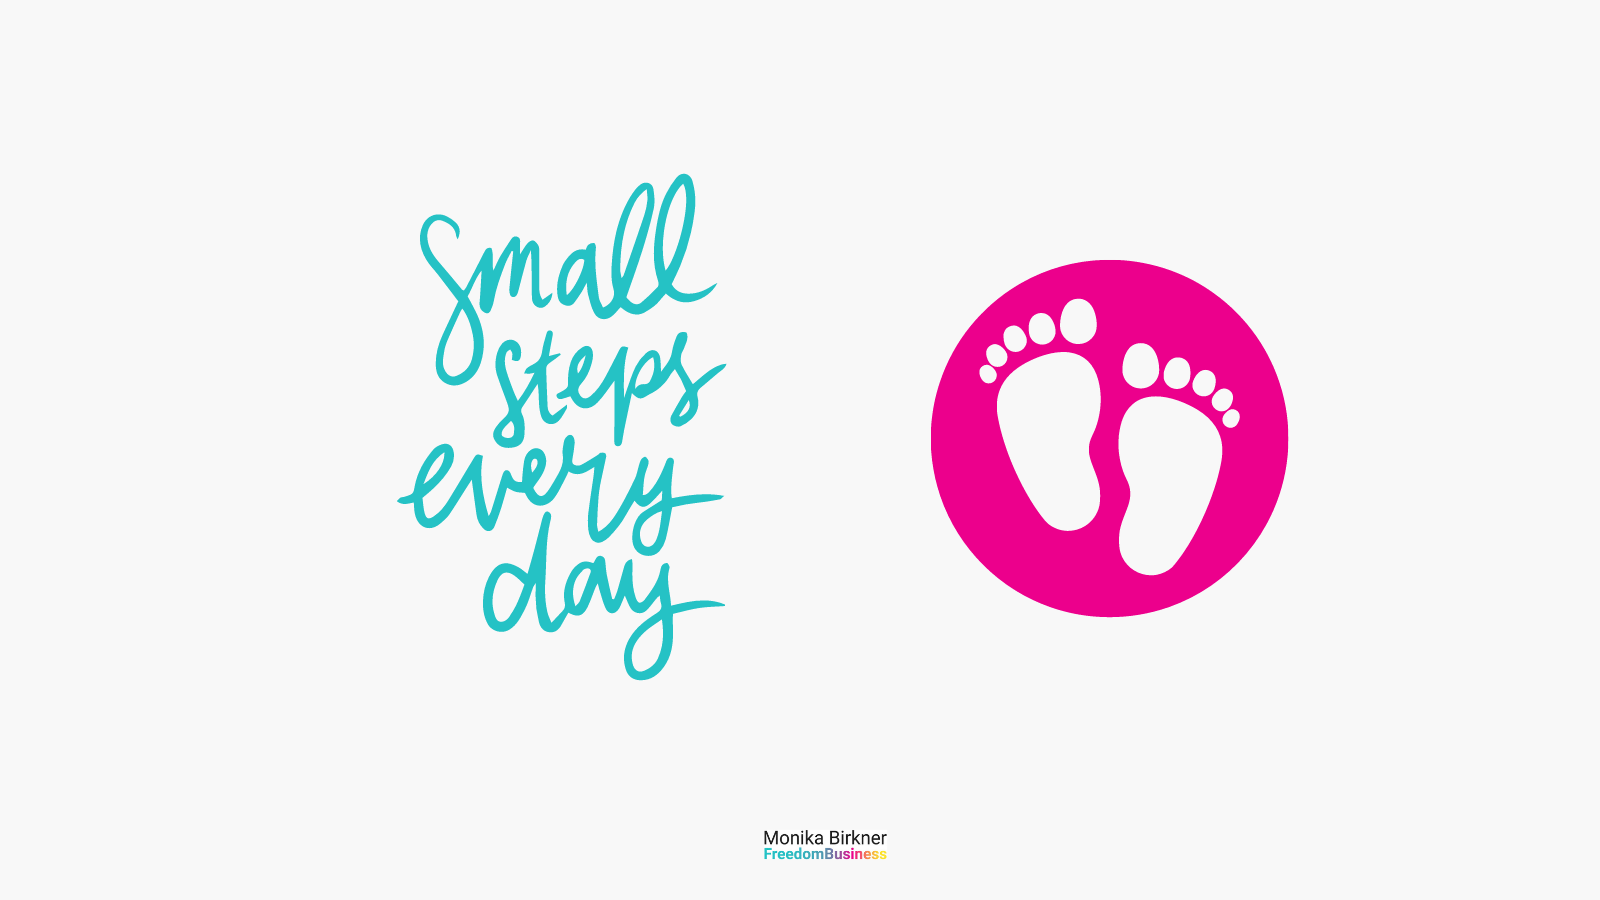 Monika Bilder Abbildung von Baby-Schritten und dem Text "Small Steps every Day"